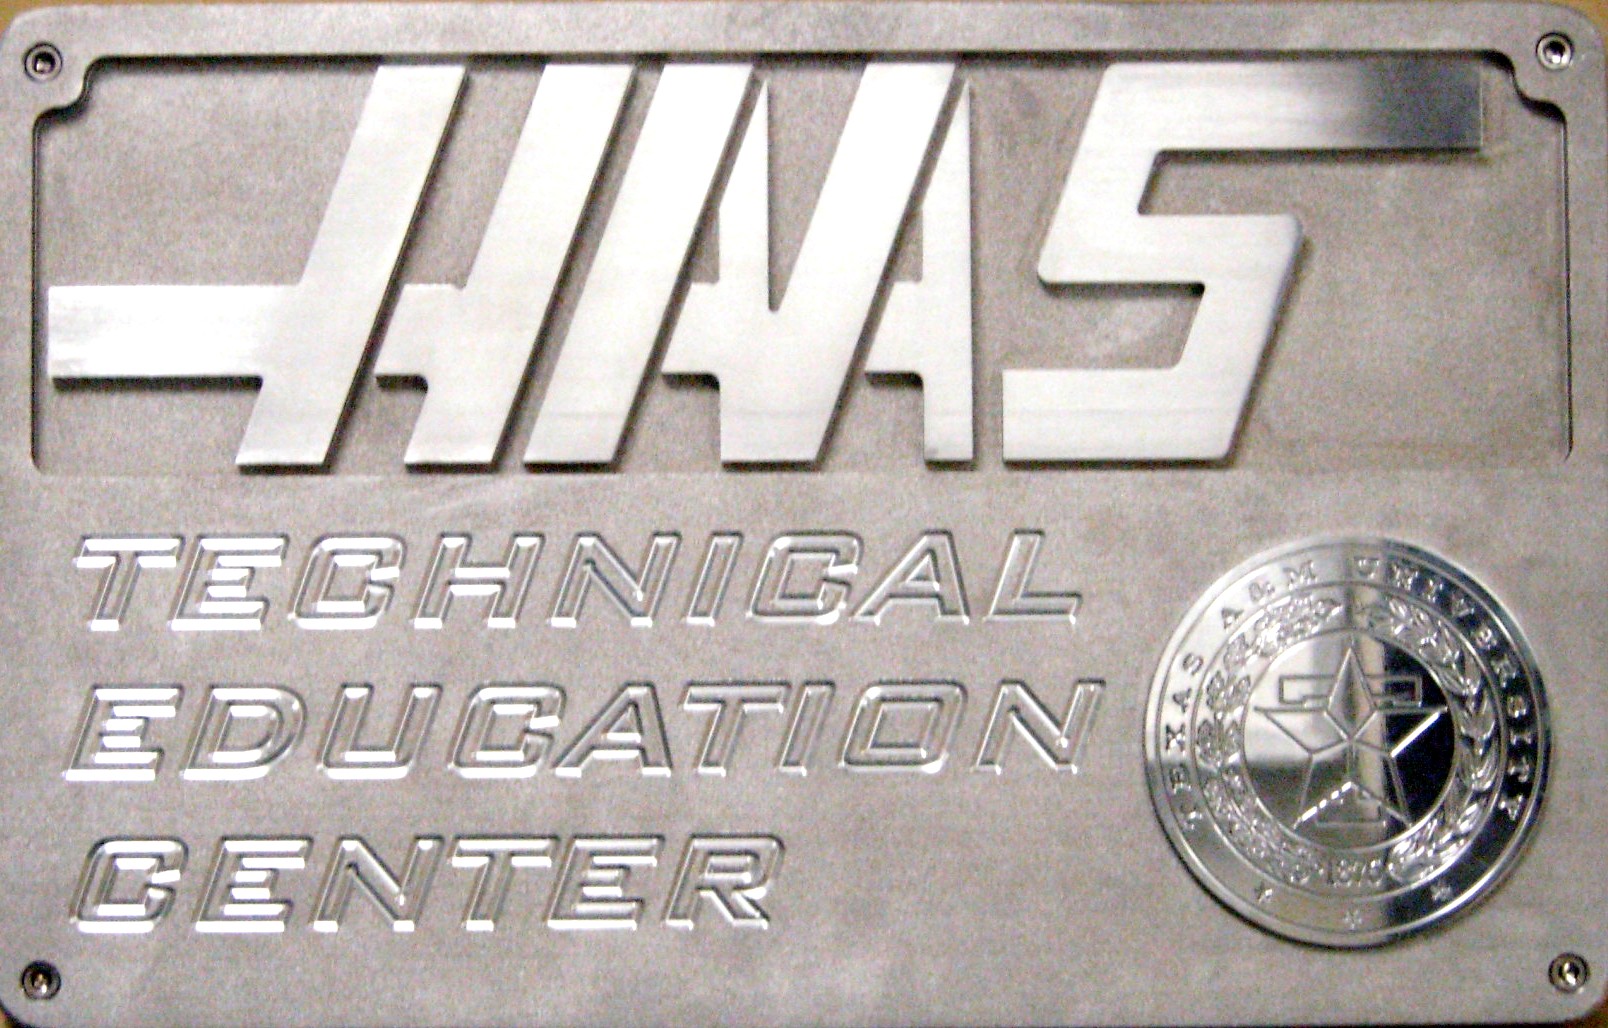 Haas Technical Education Center